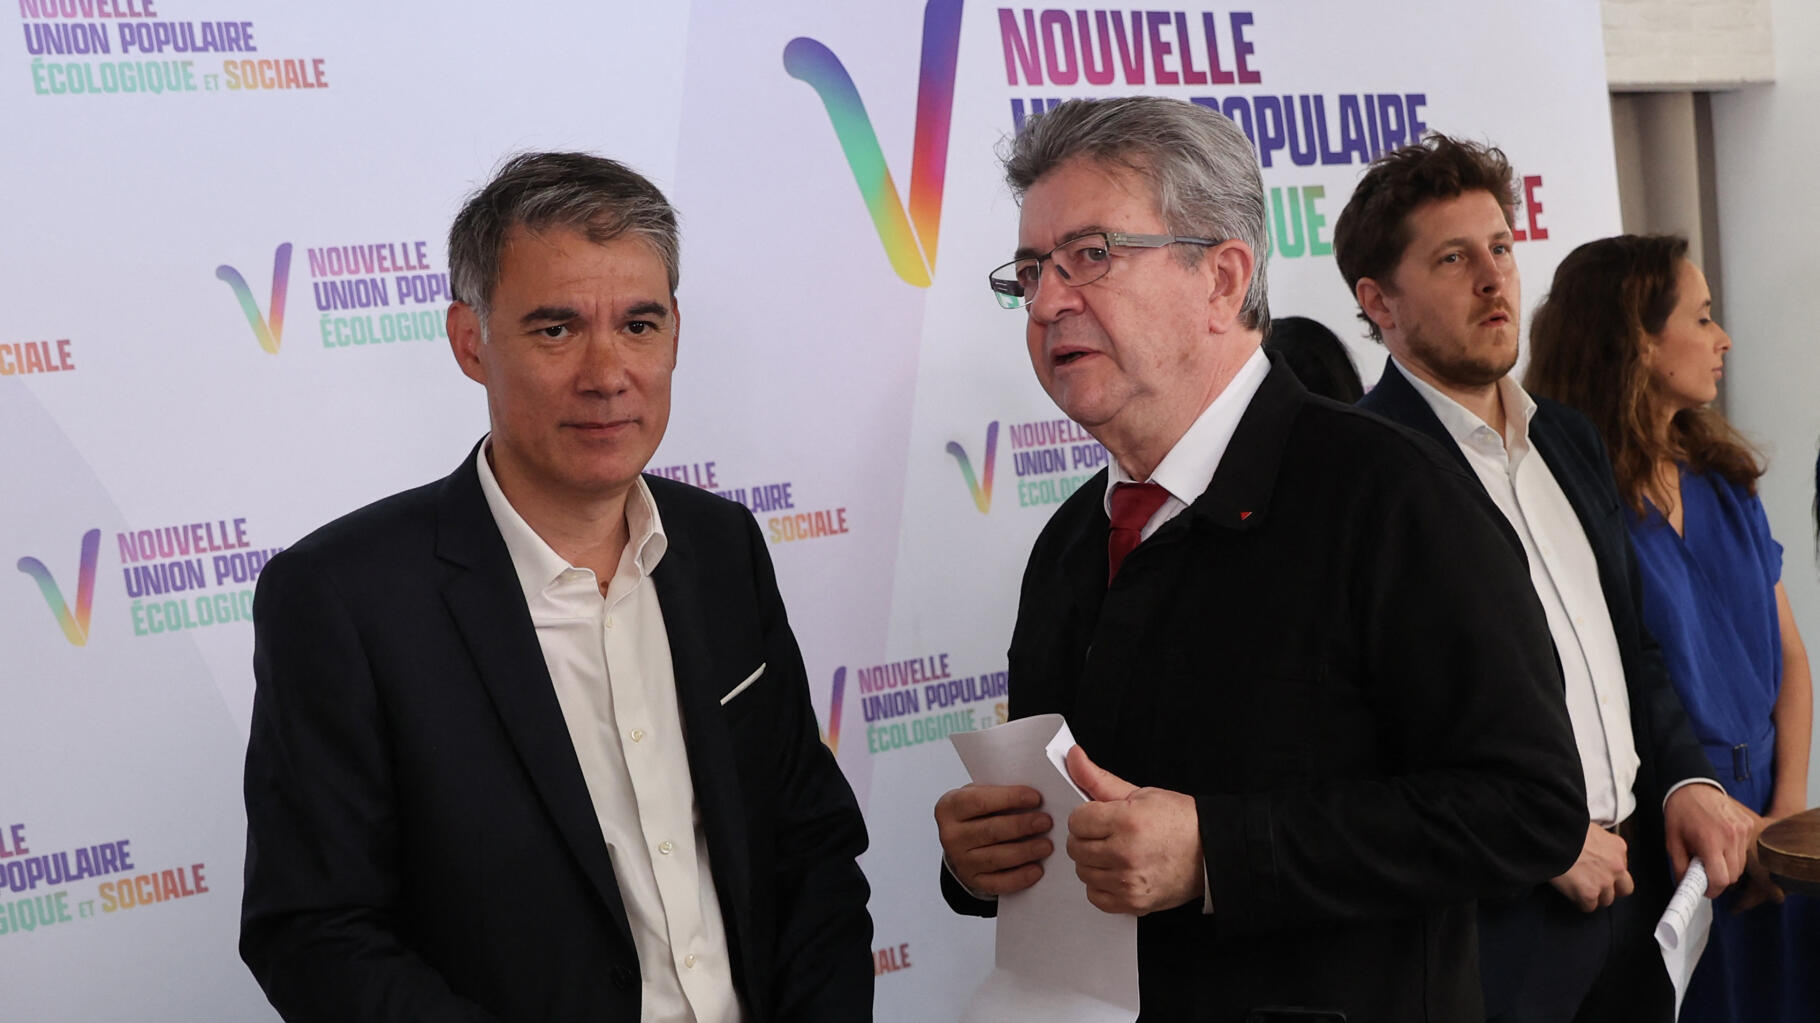 Olivier Faure reprend Jean-Luc Mélenchon après une « provocation » dans un  tweet